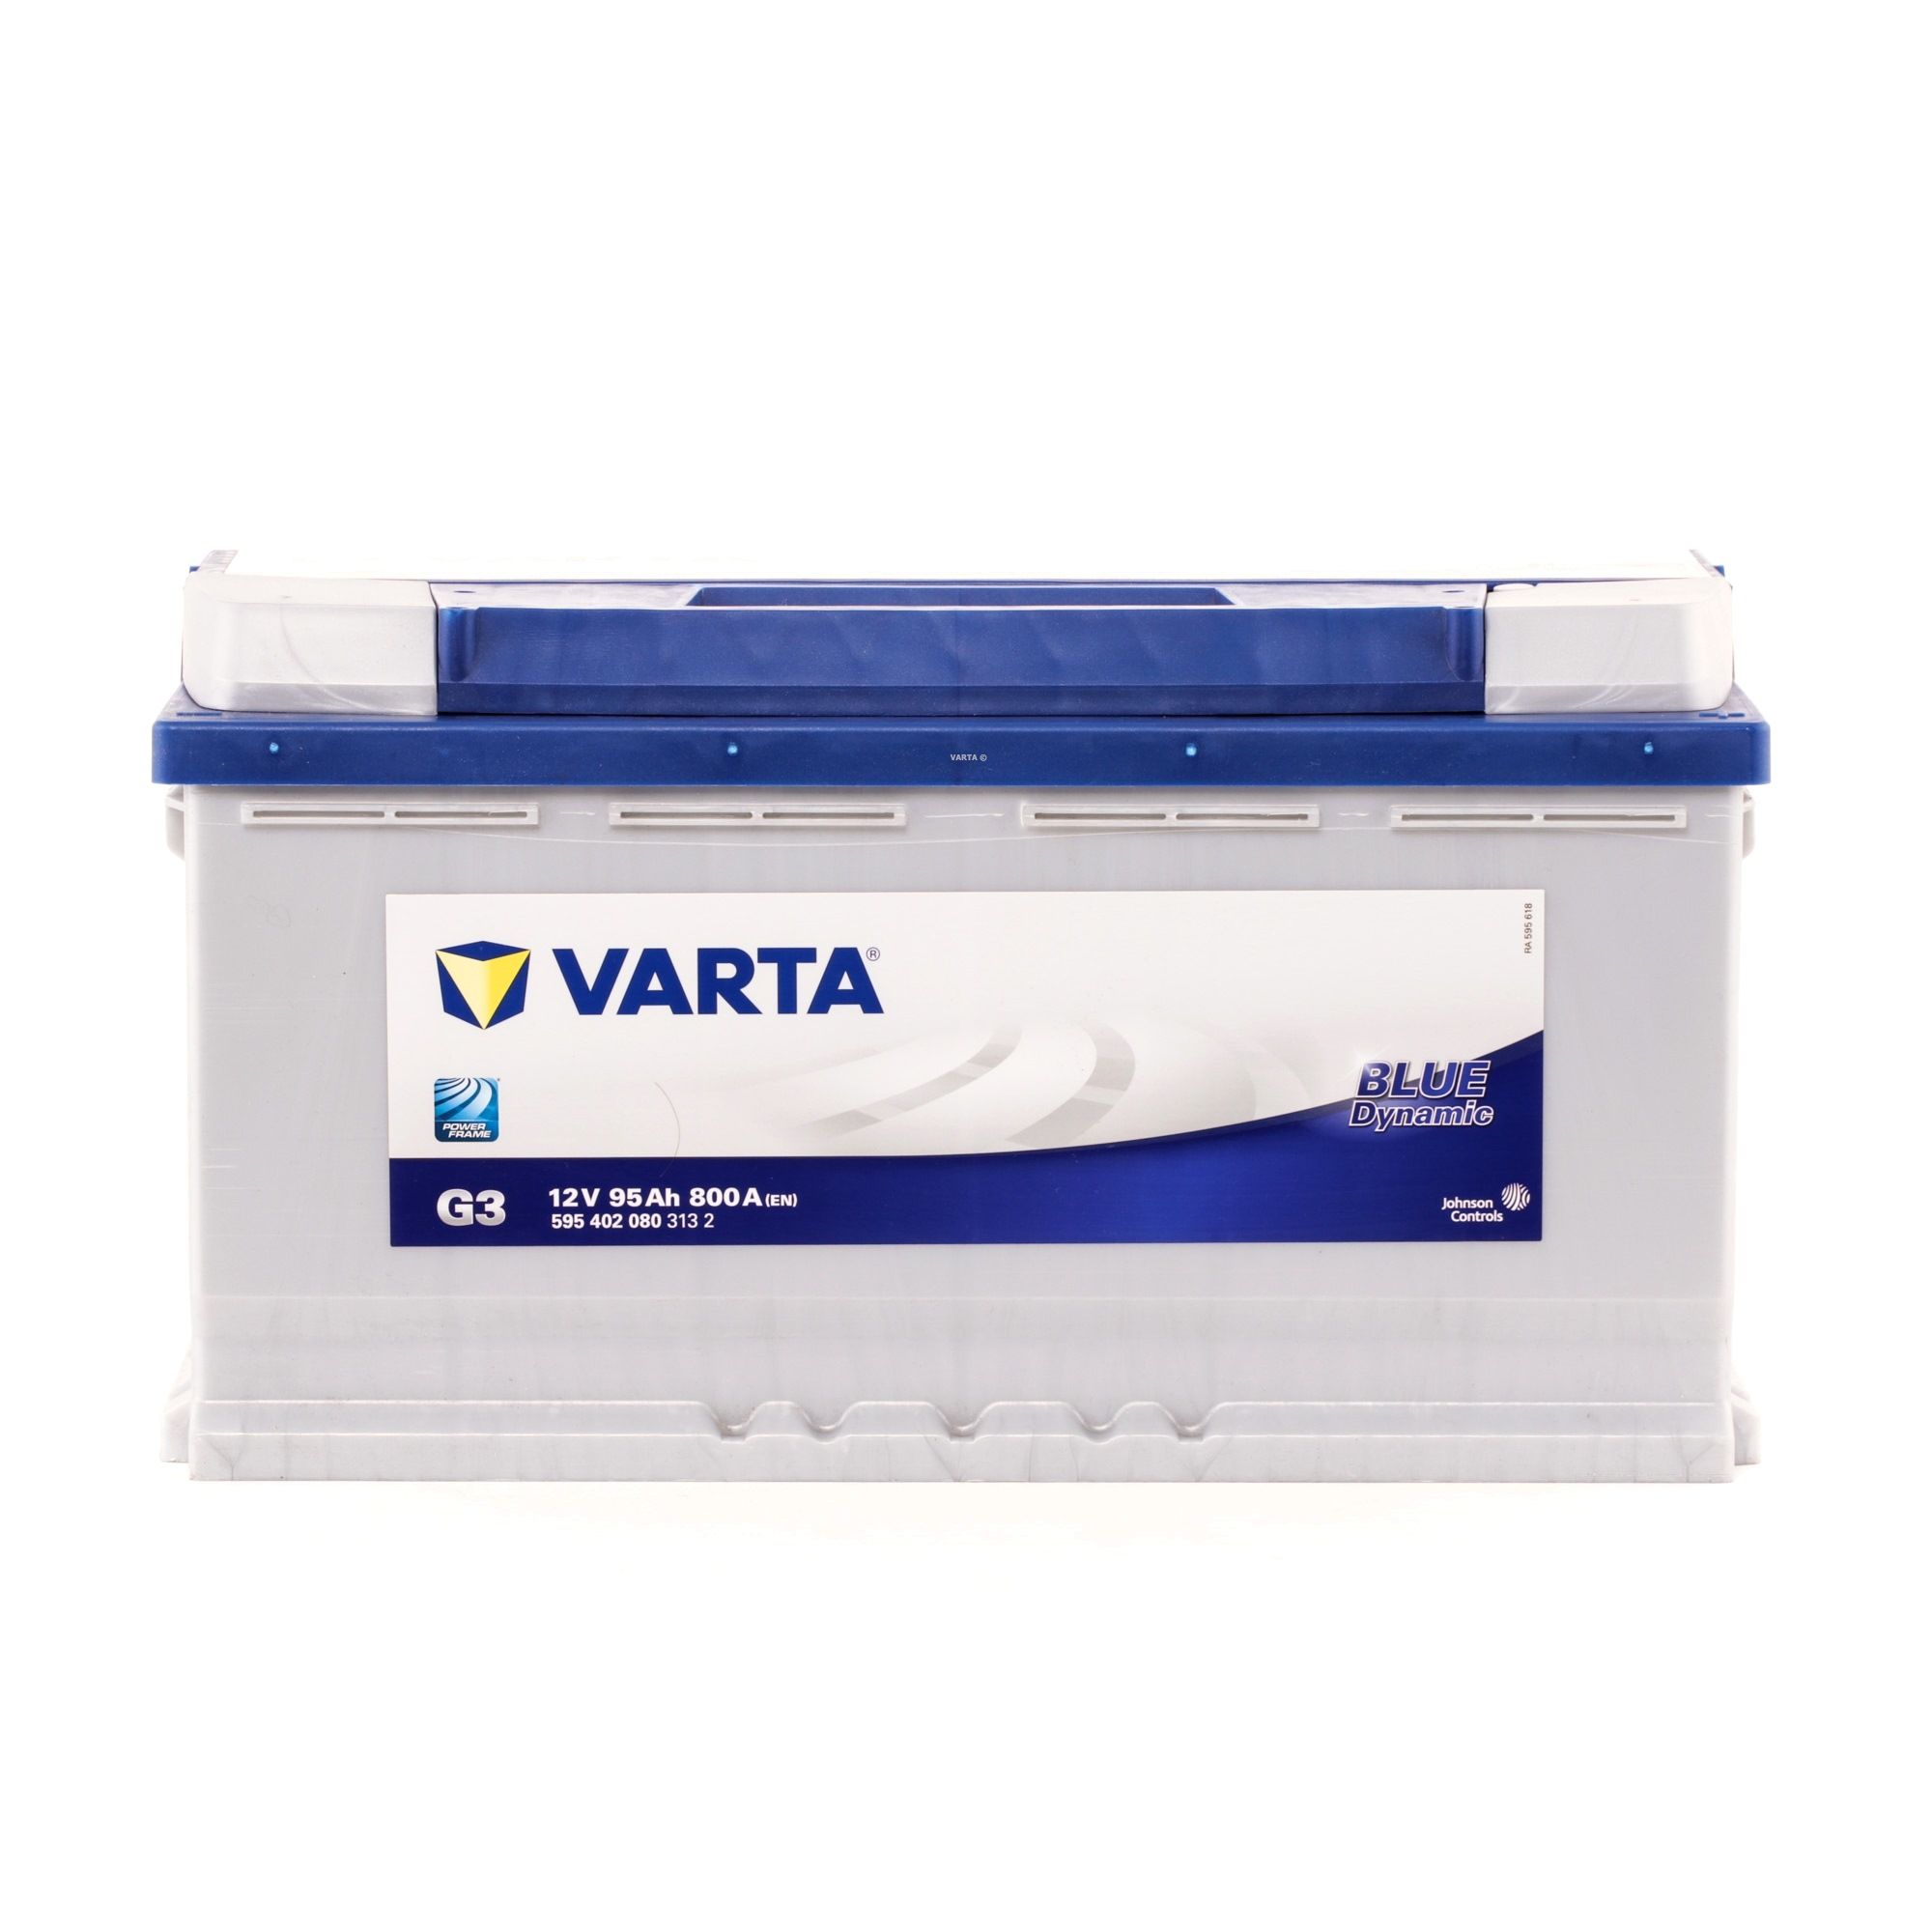 VARTA 5954020803132 d'origine MERCEDES-BENZ CLK 2008 Batterie 12V 95Ah 800A B13 insensibilité aux secousses augmentée